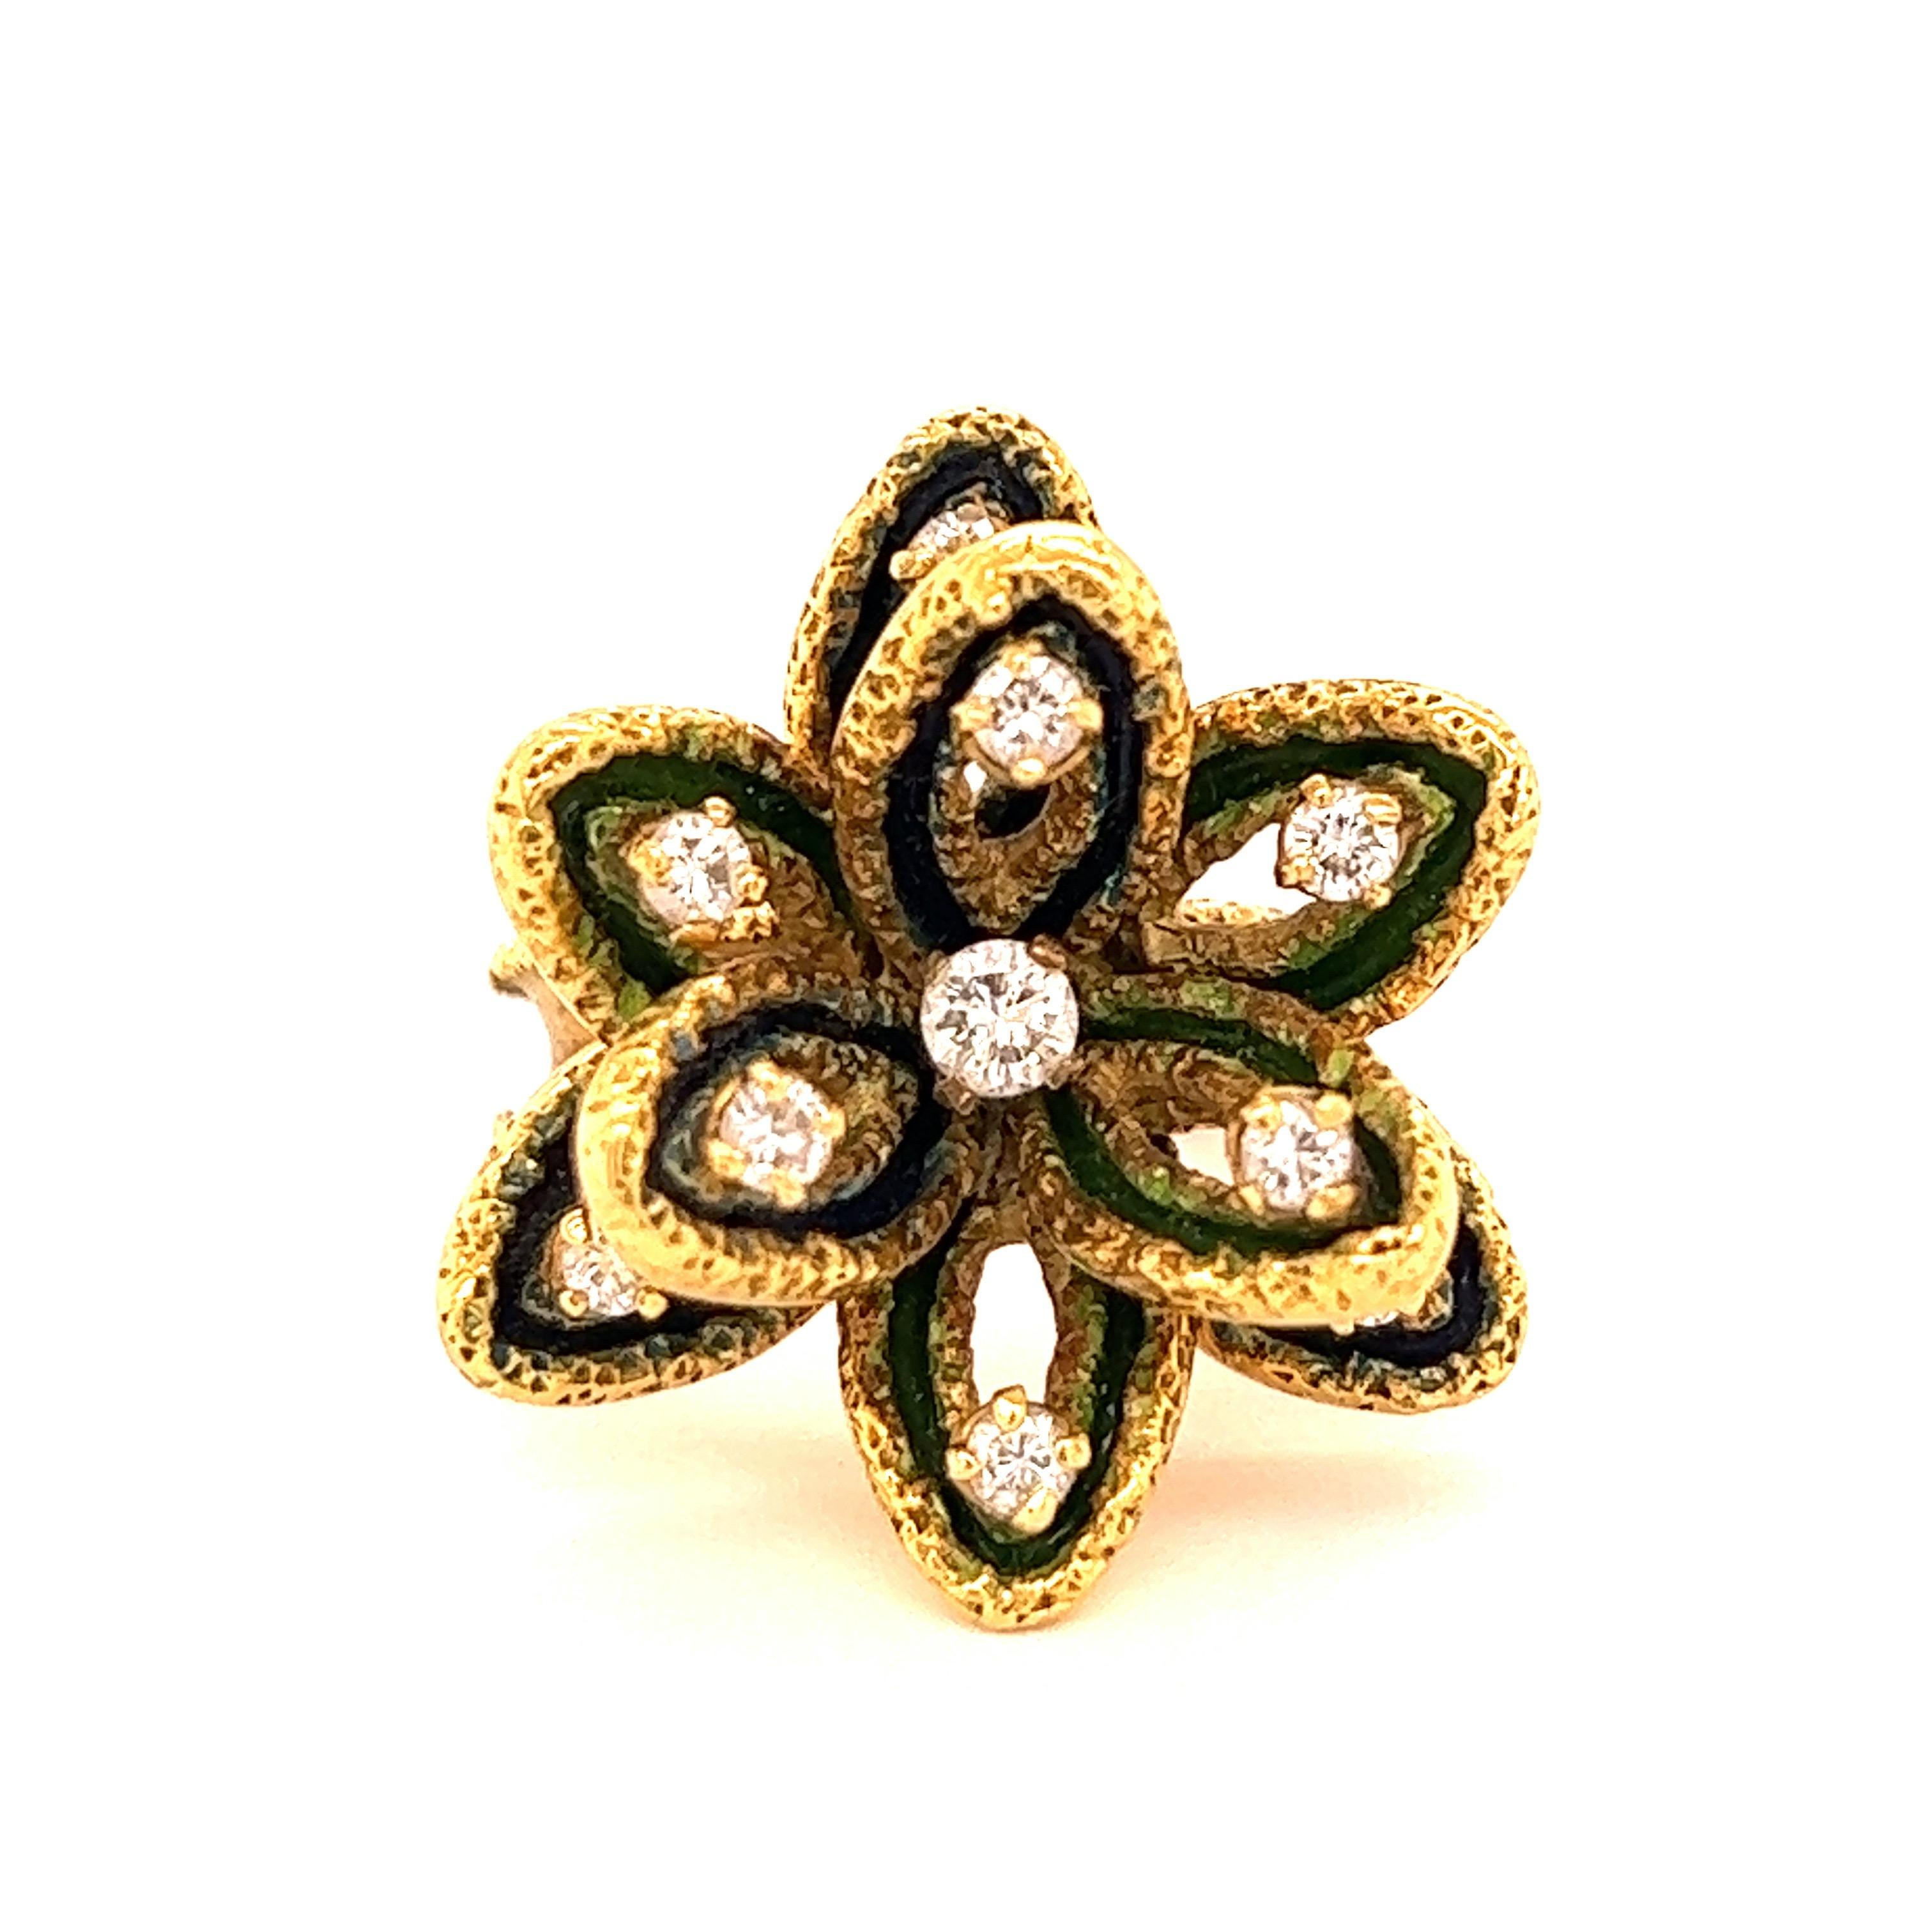 Bague fleur en diamant Boucheron Paris

Dix diamants ronds d'environ 0,50 carat, sertis sur de l'or jaune 18 carats texturé, à motif de fleurs ; marqué Boucheron Paris, 50208.

Taille : Largeur supérieure 2,5 cm
Poids total : 14.0 grammes